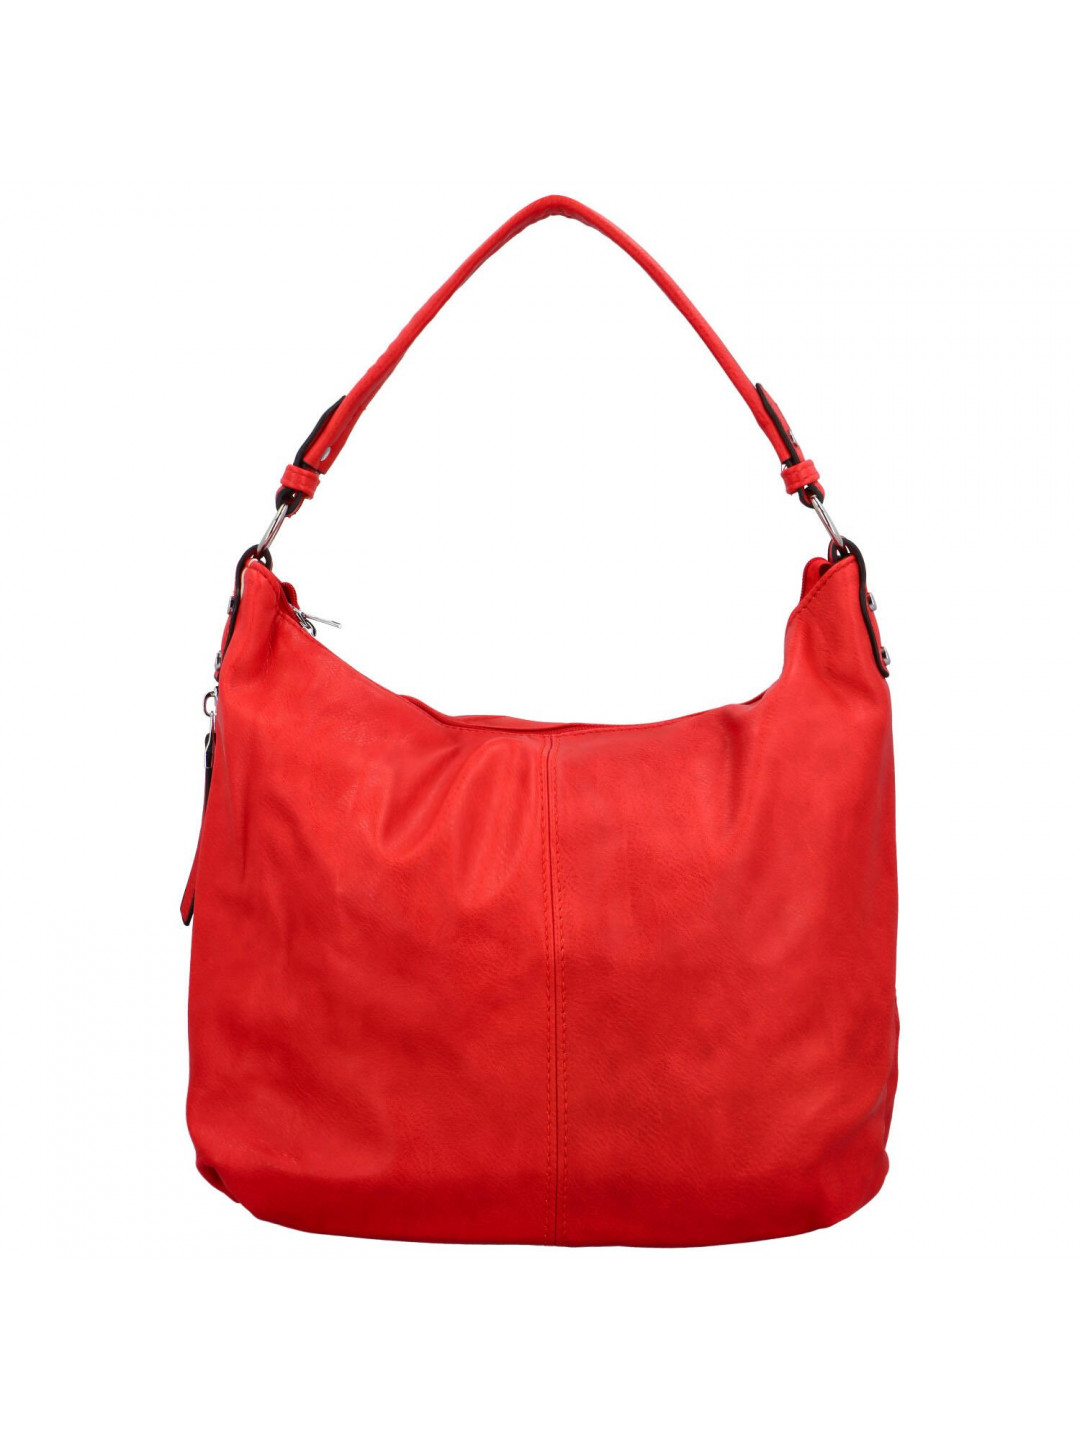 Dámská kabelka na rameno červená – Romina & Co Bags Elianora